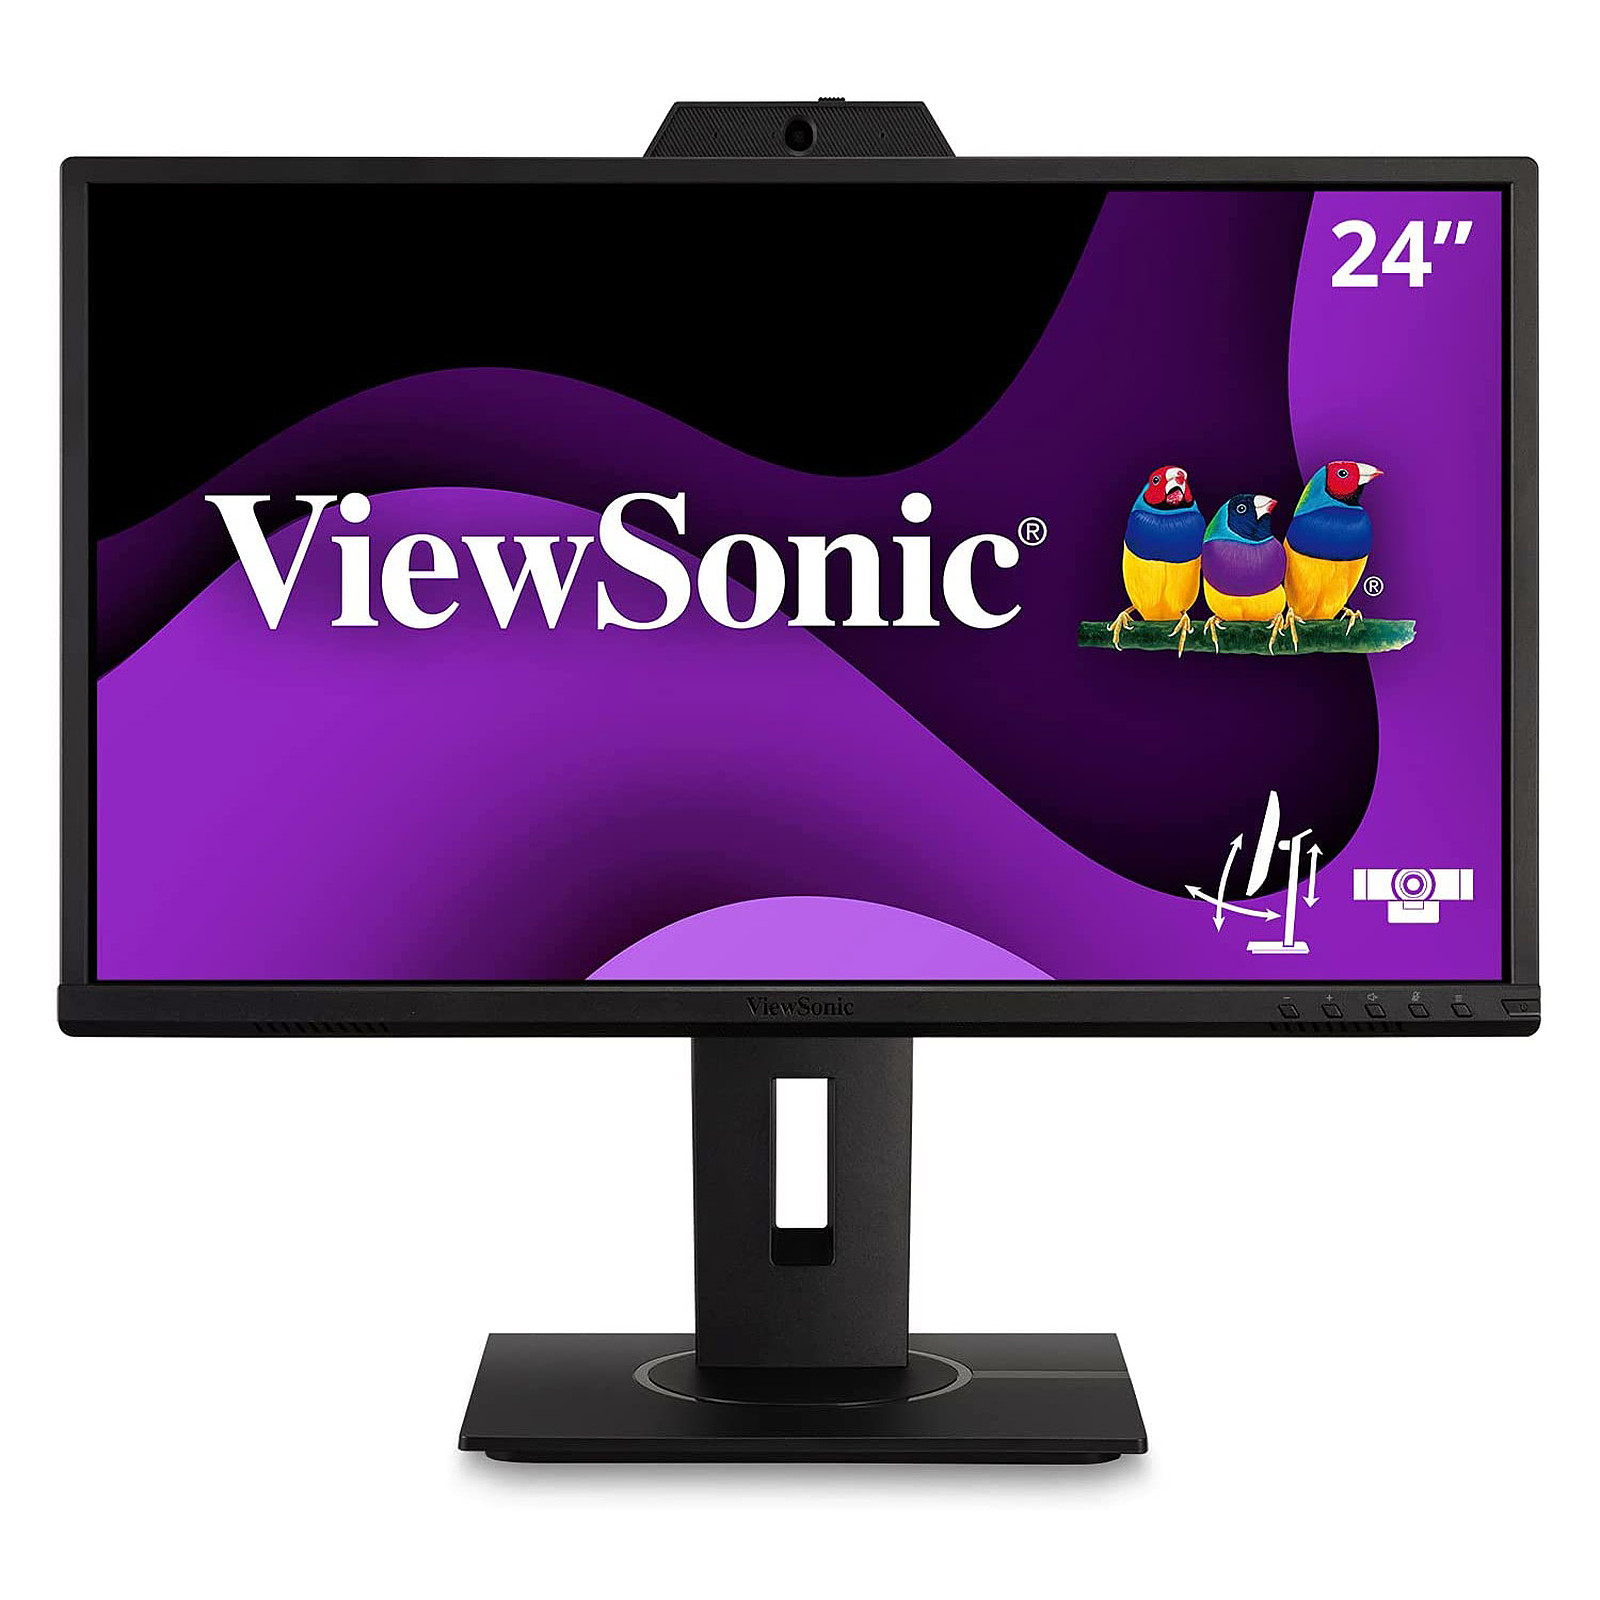 ViewSonic 23.8" LED - VG2440V - Ecran PC ViewSonic